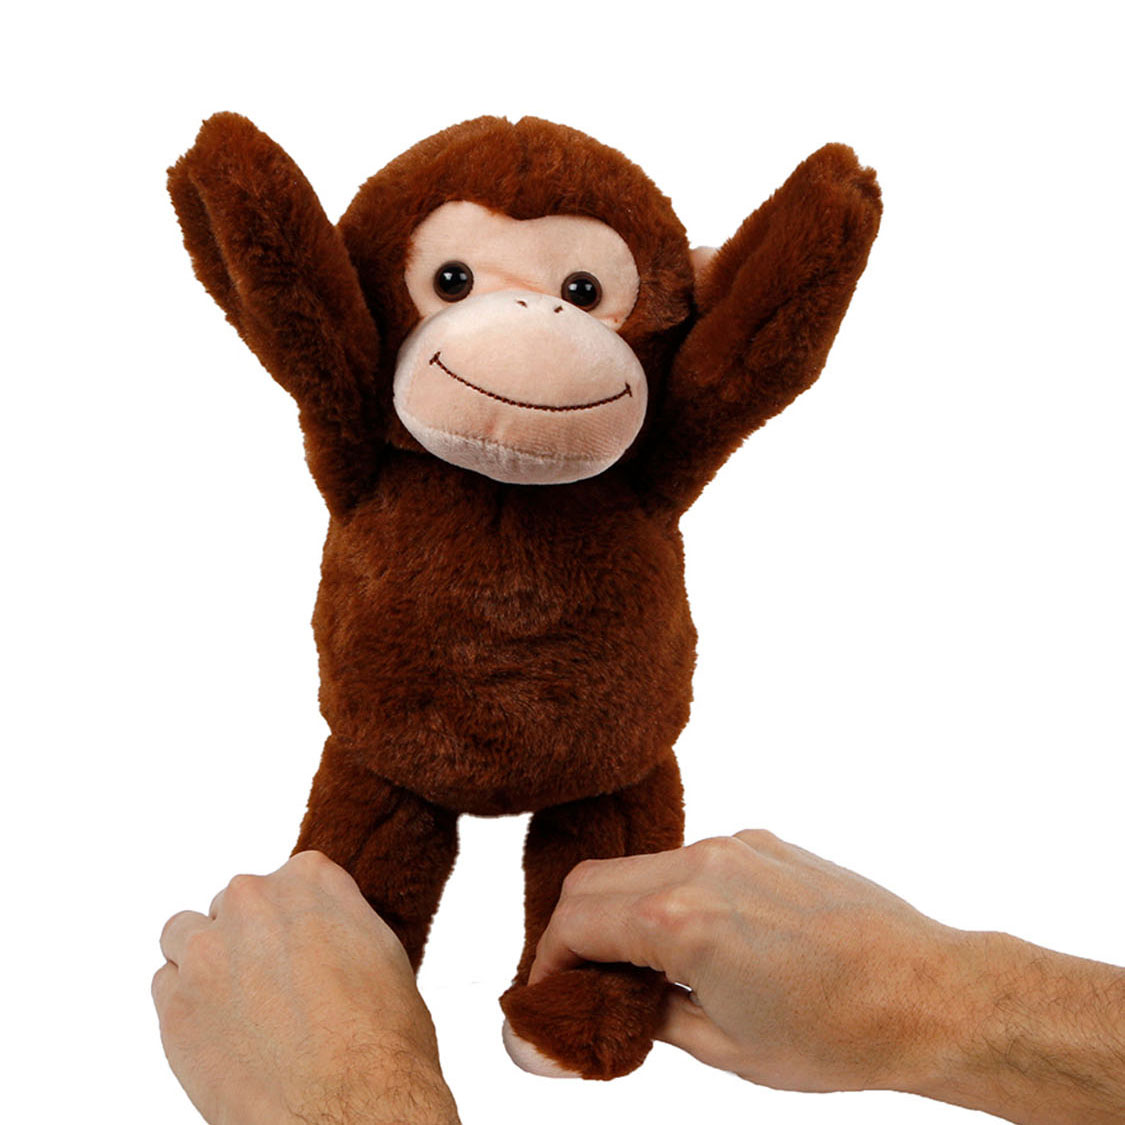 Peekaboo-Affe-Plüschtier mit beweglichen Armen, 33 cm